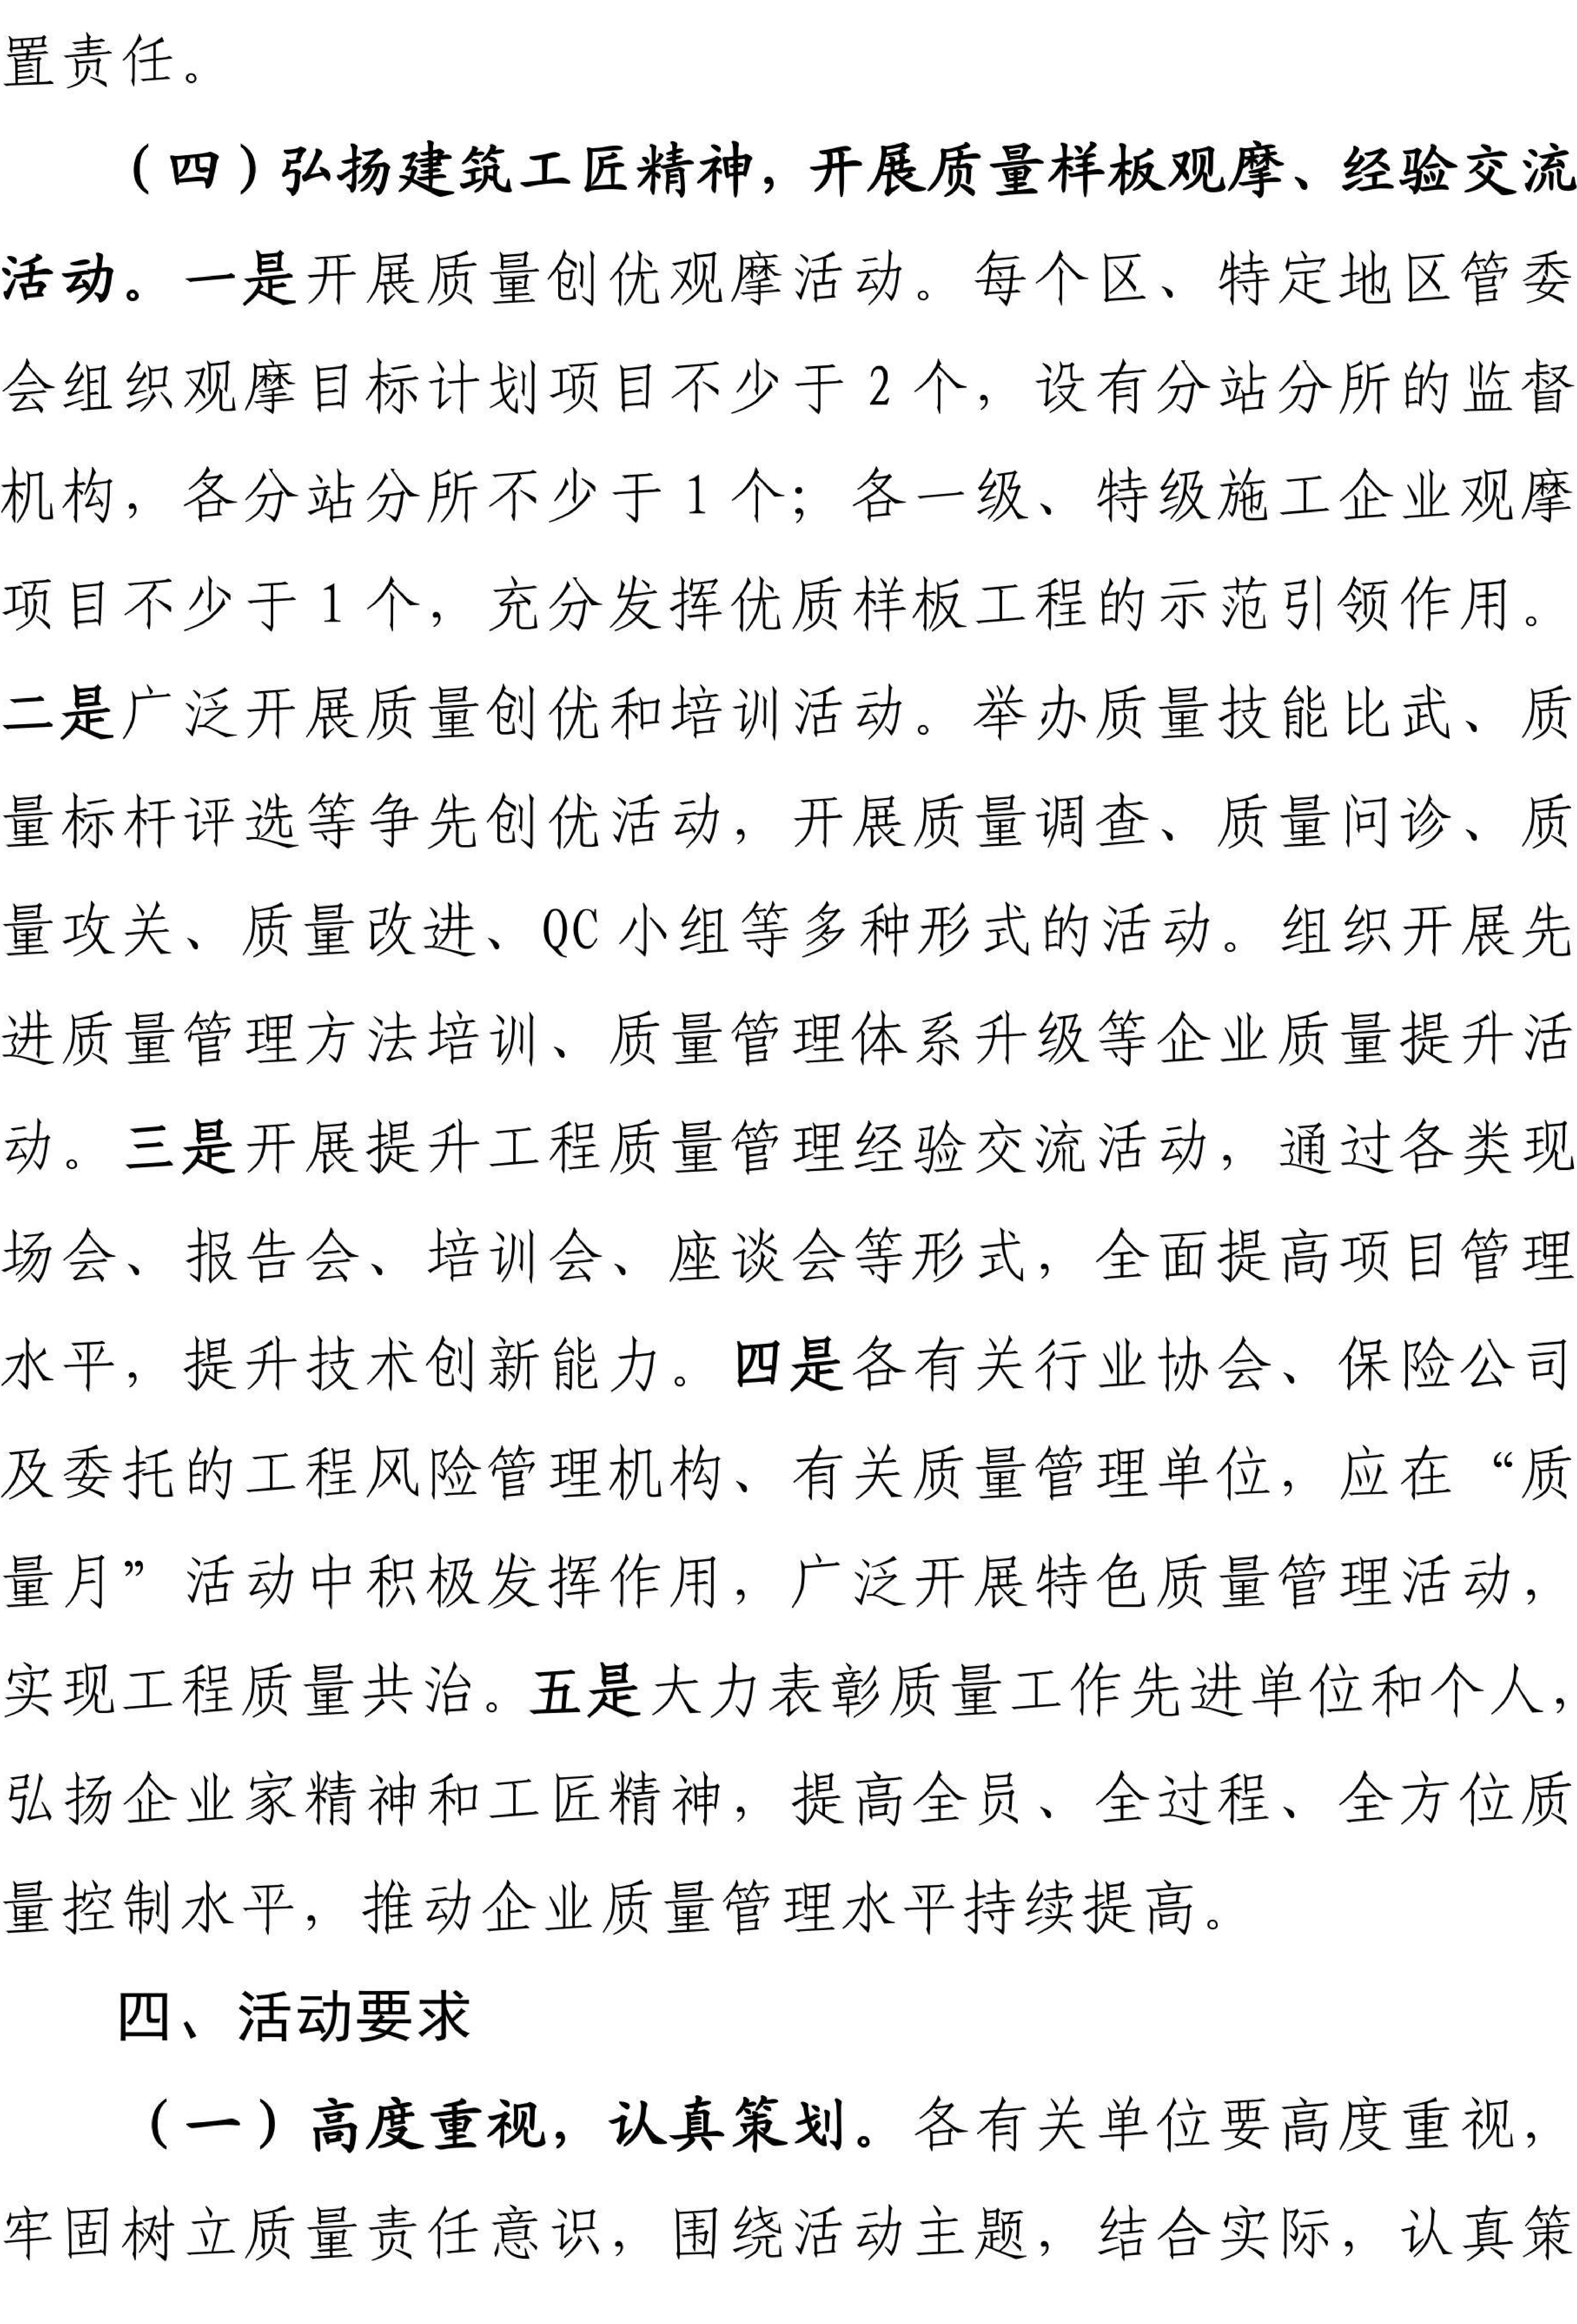 关于开展2023年上海市建设系统“质量月”活动的通知222_04.jpg